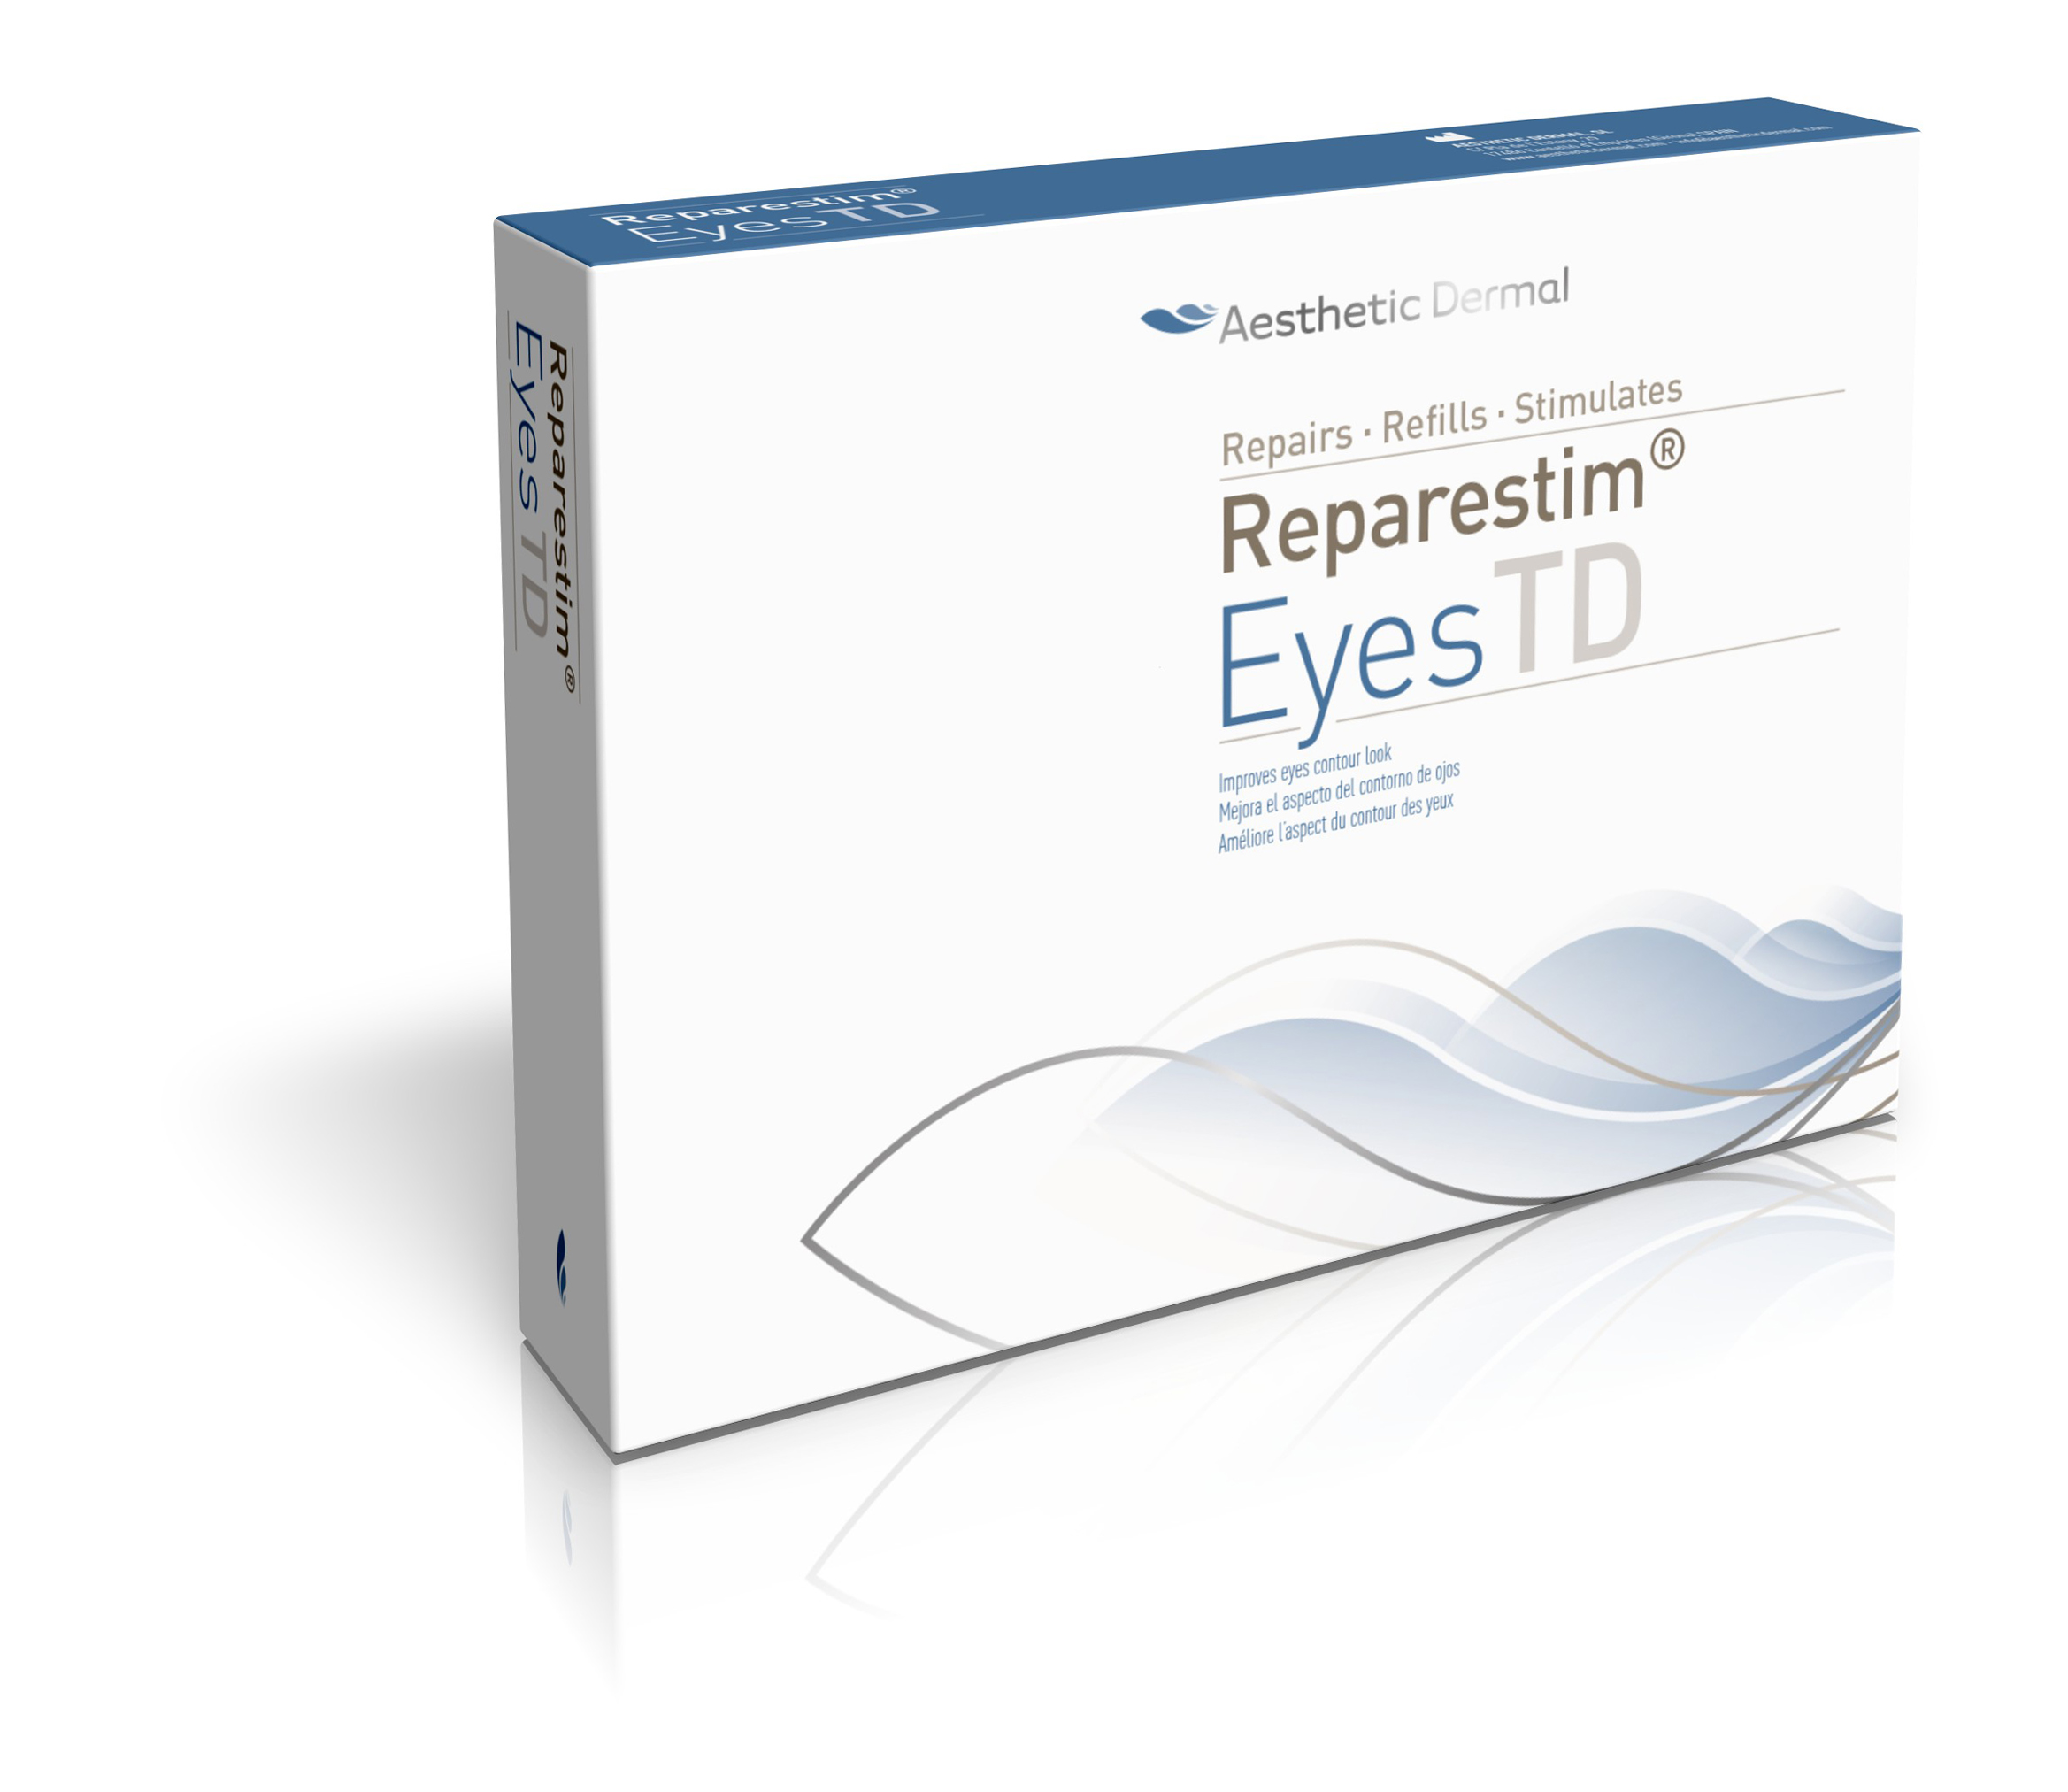 Aesthetic Dermal - ReparestimTD Eyes